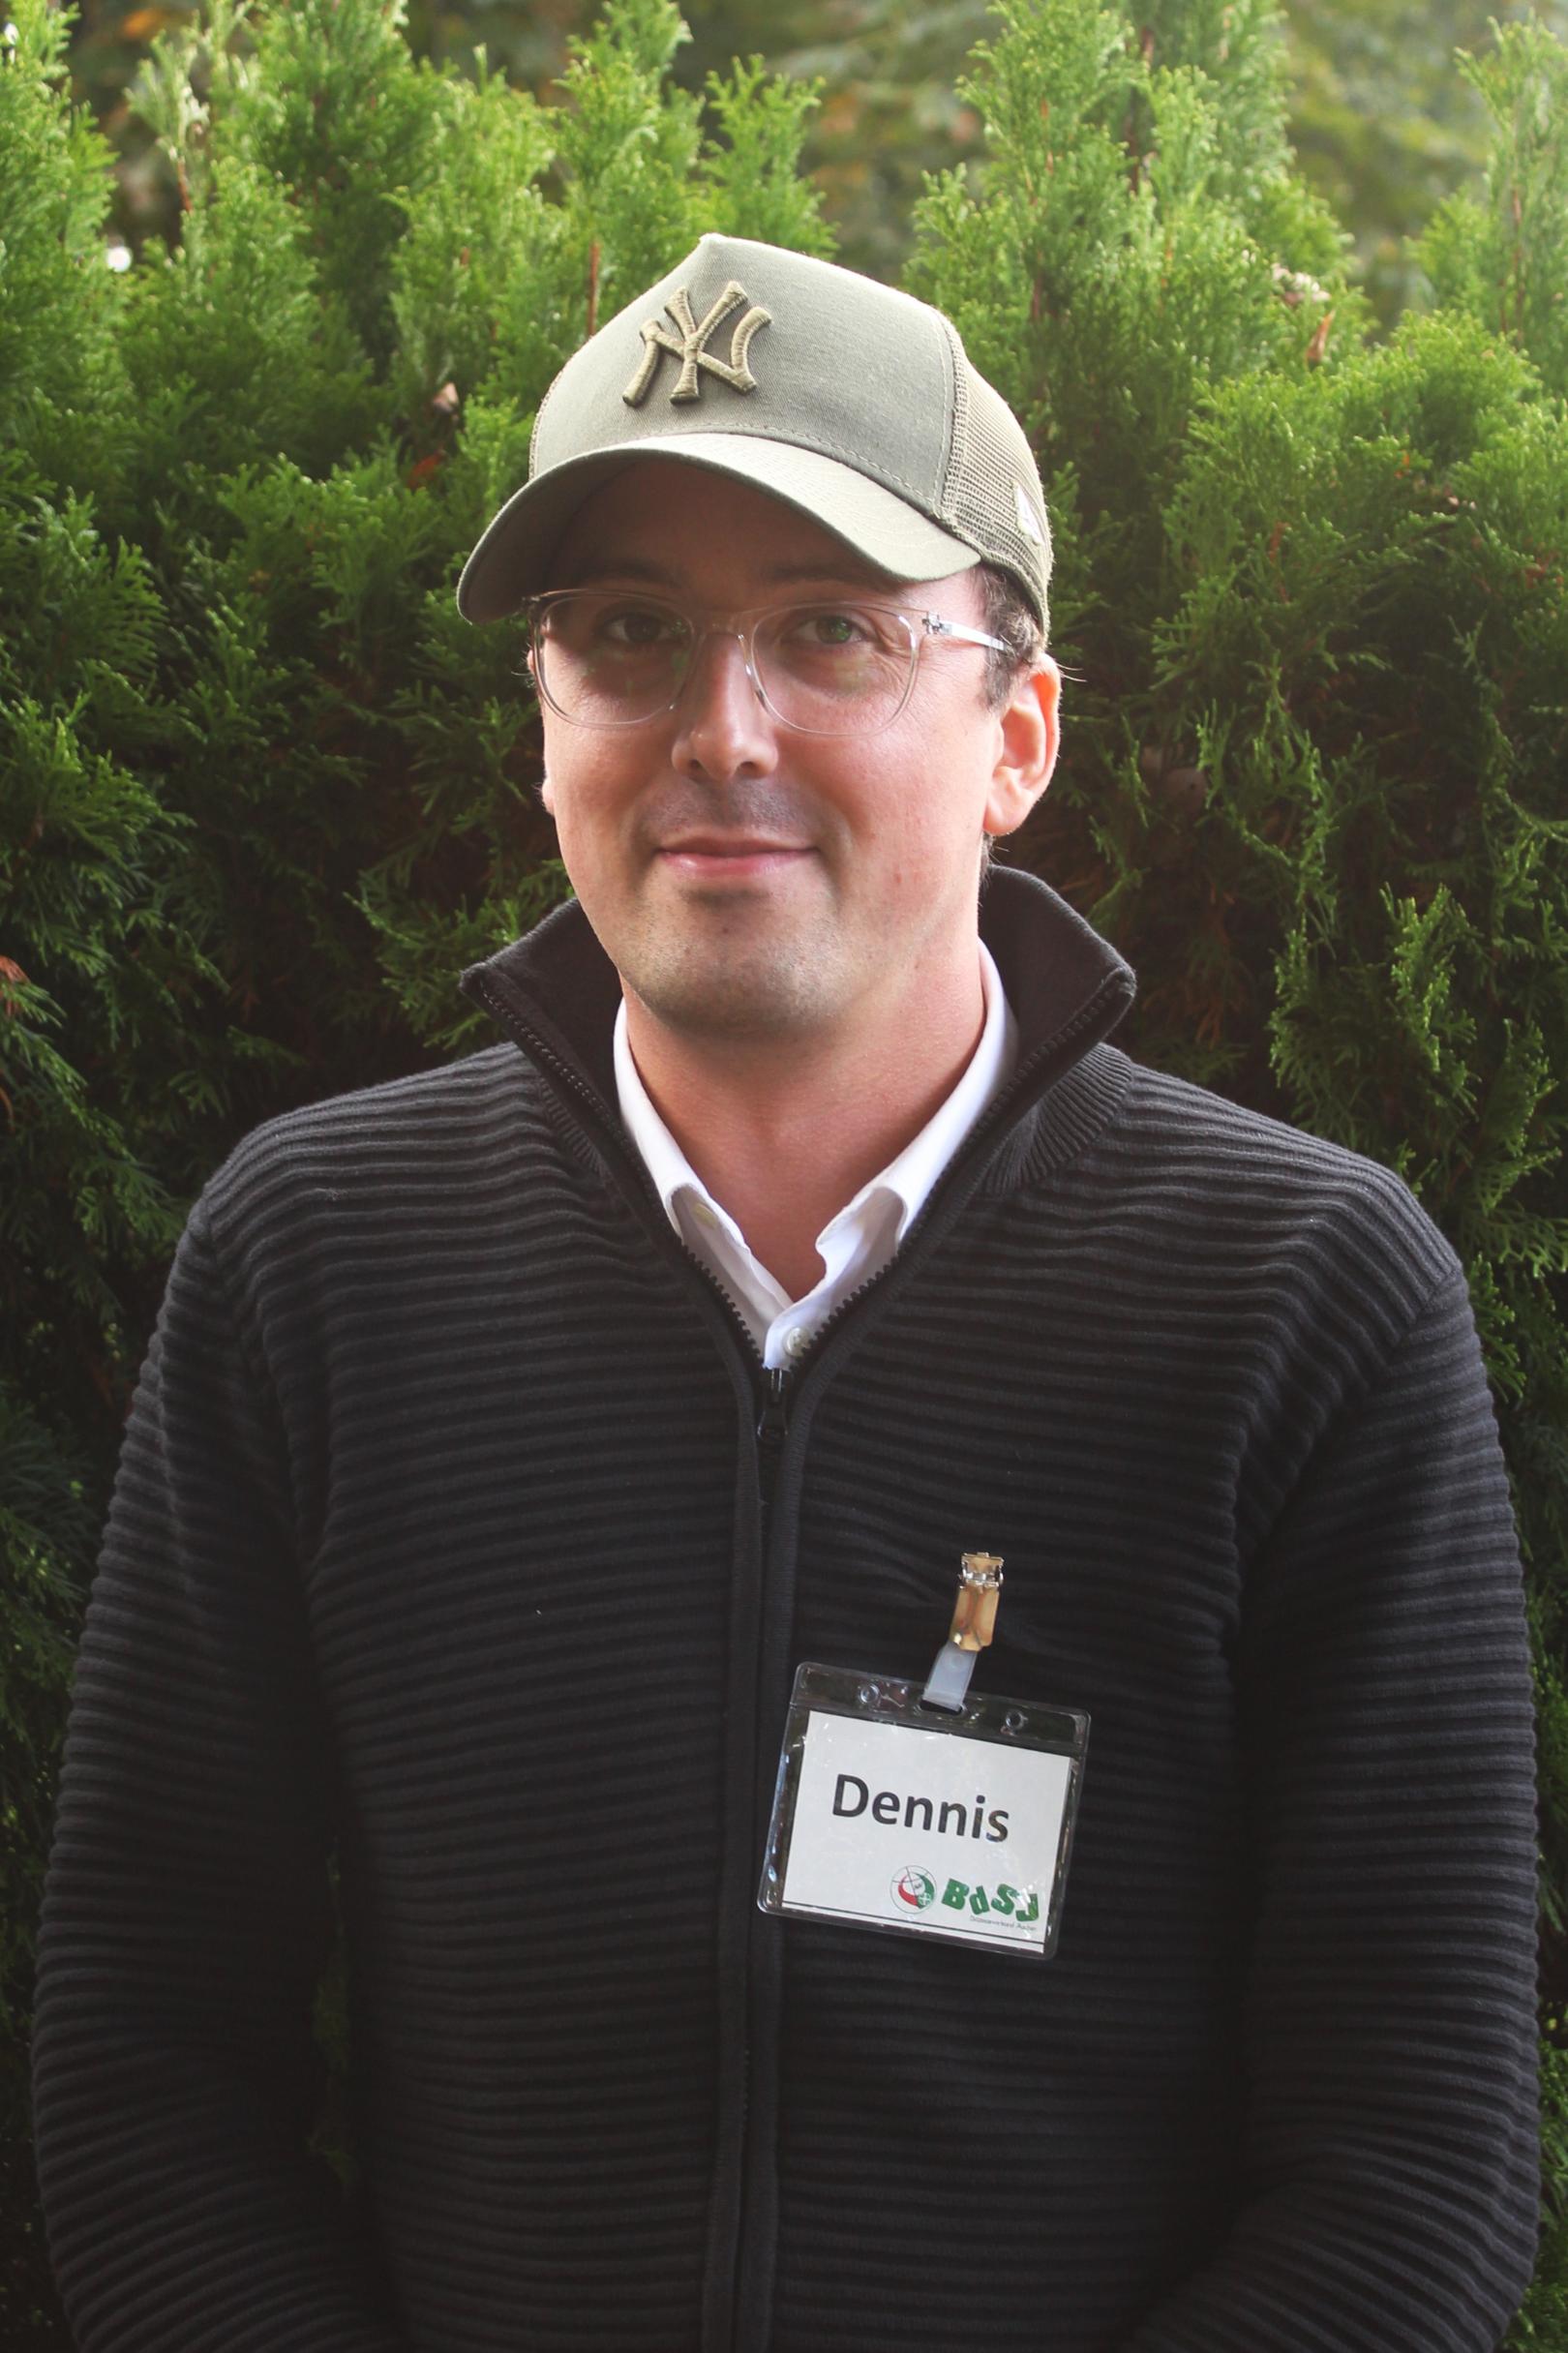 Dennis Opdenbusch vom Bezirksverband Viersen‐Mitte wurde zum neuen Beisitzer gewählt. (c) BDSJ